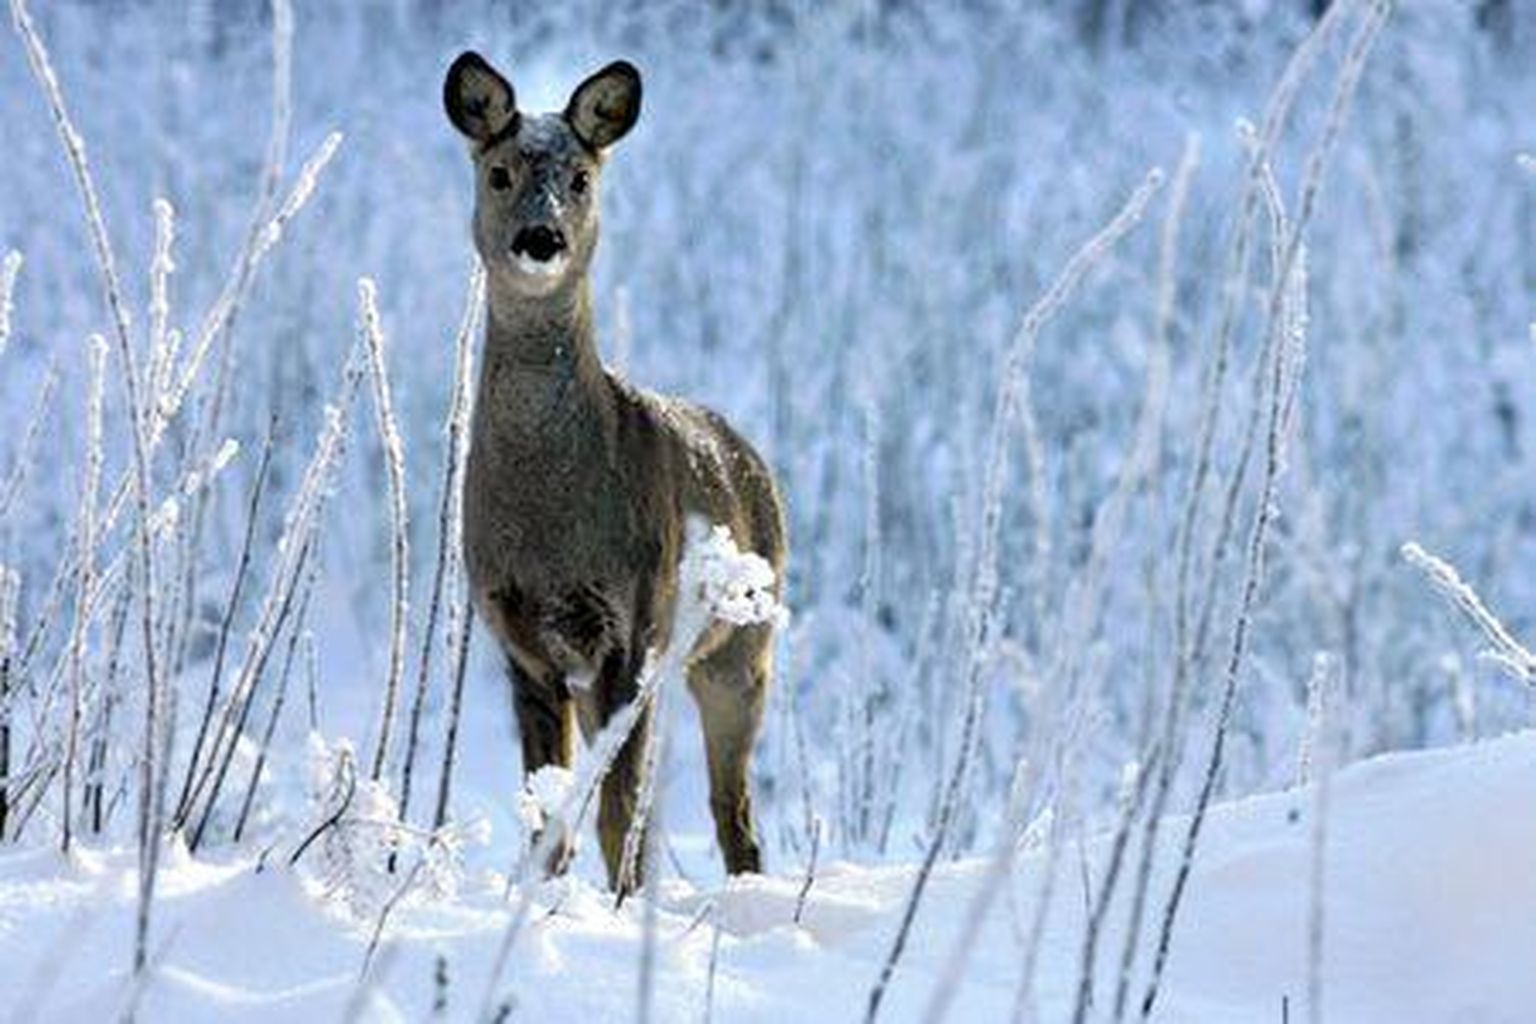 Leebetel talvedel saavad loomad ise hakkama, aga karmimatel peab nende toitmisse teadlikult suhtuma.